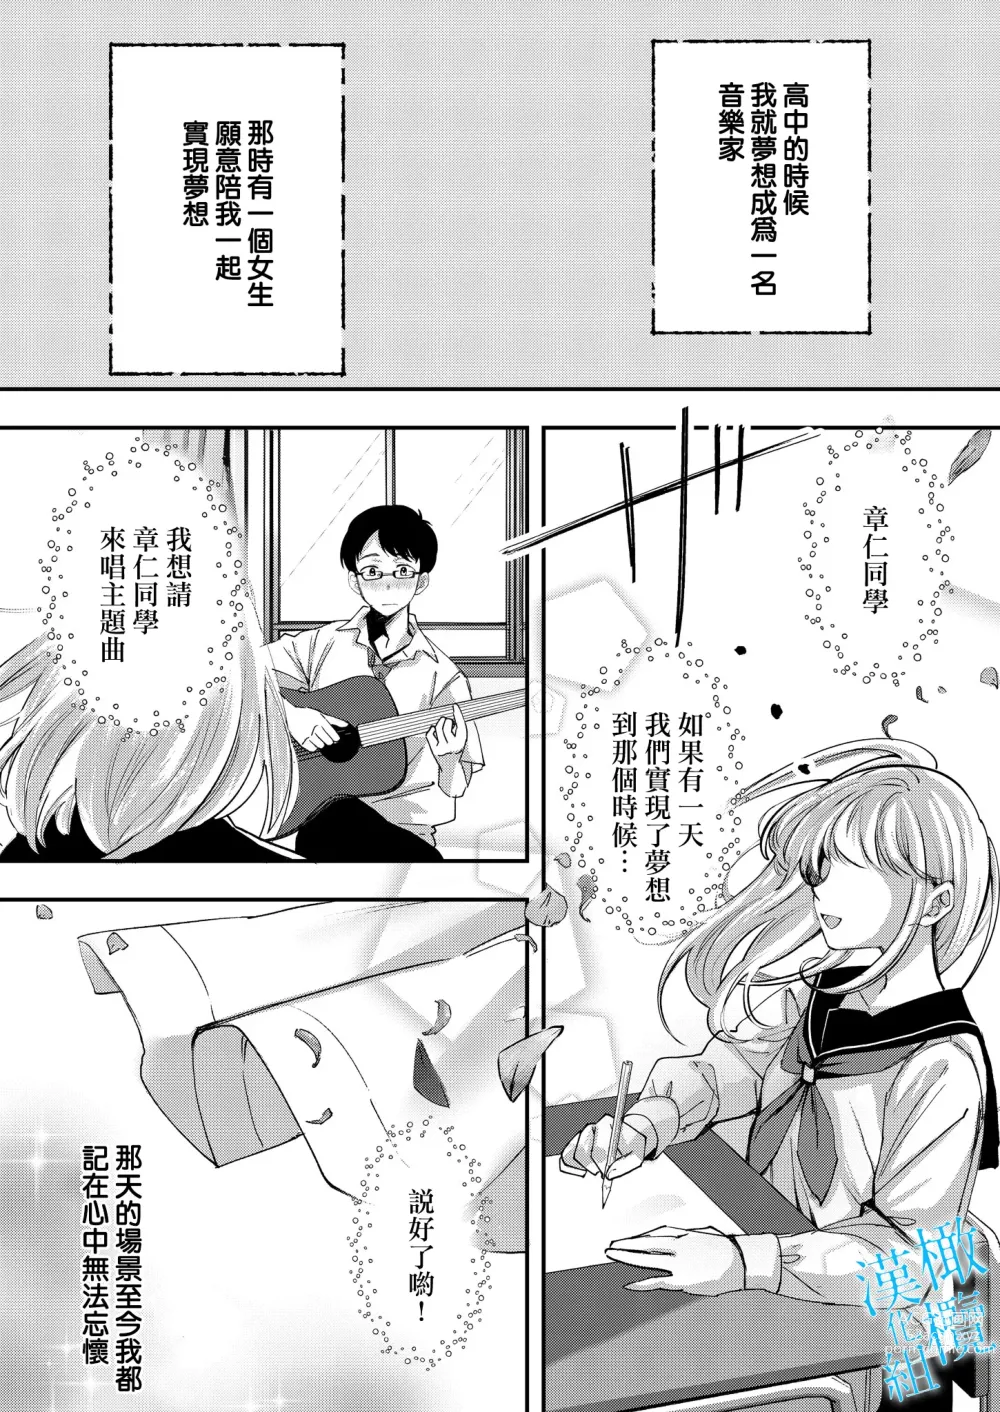 Page 5 of doujinshi 于夜晚绽放的青空